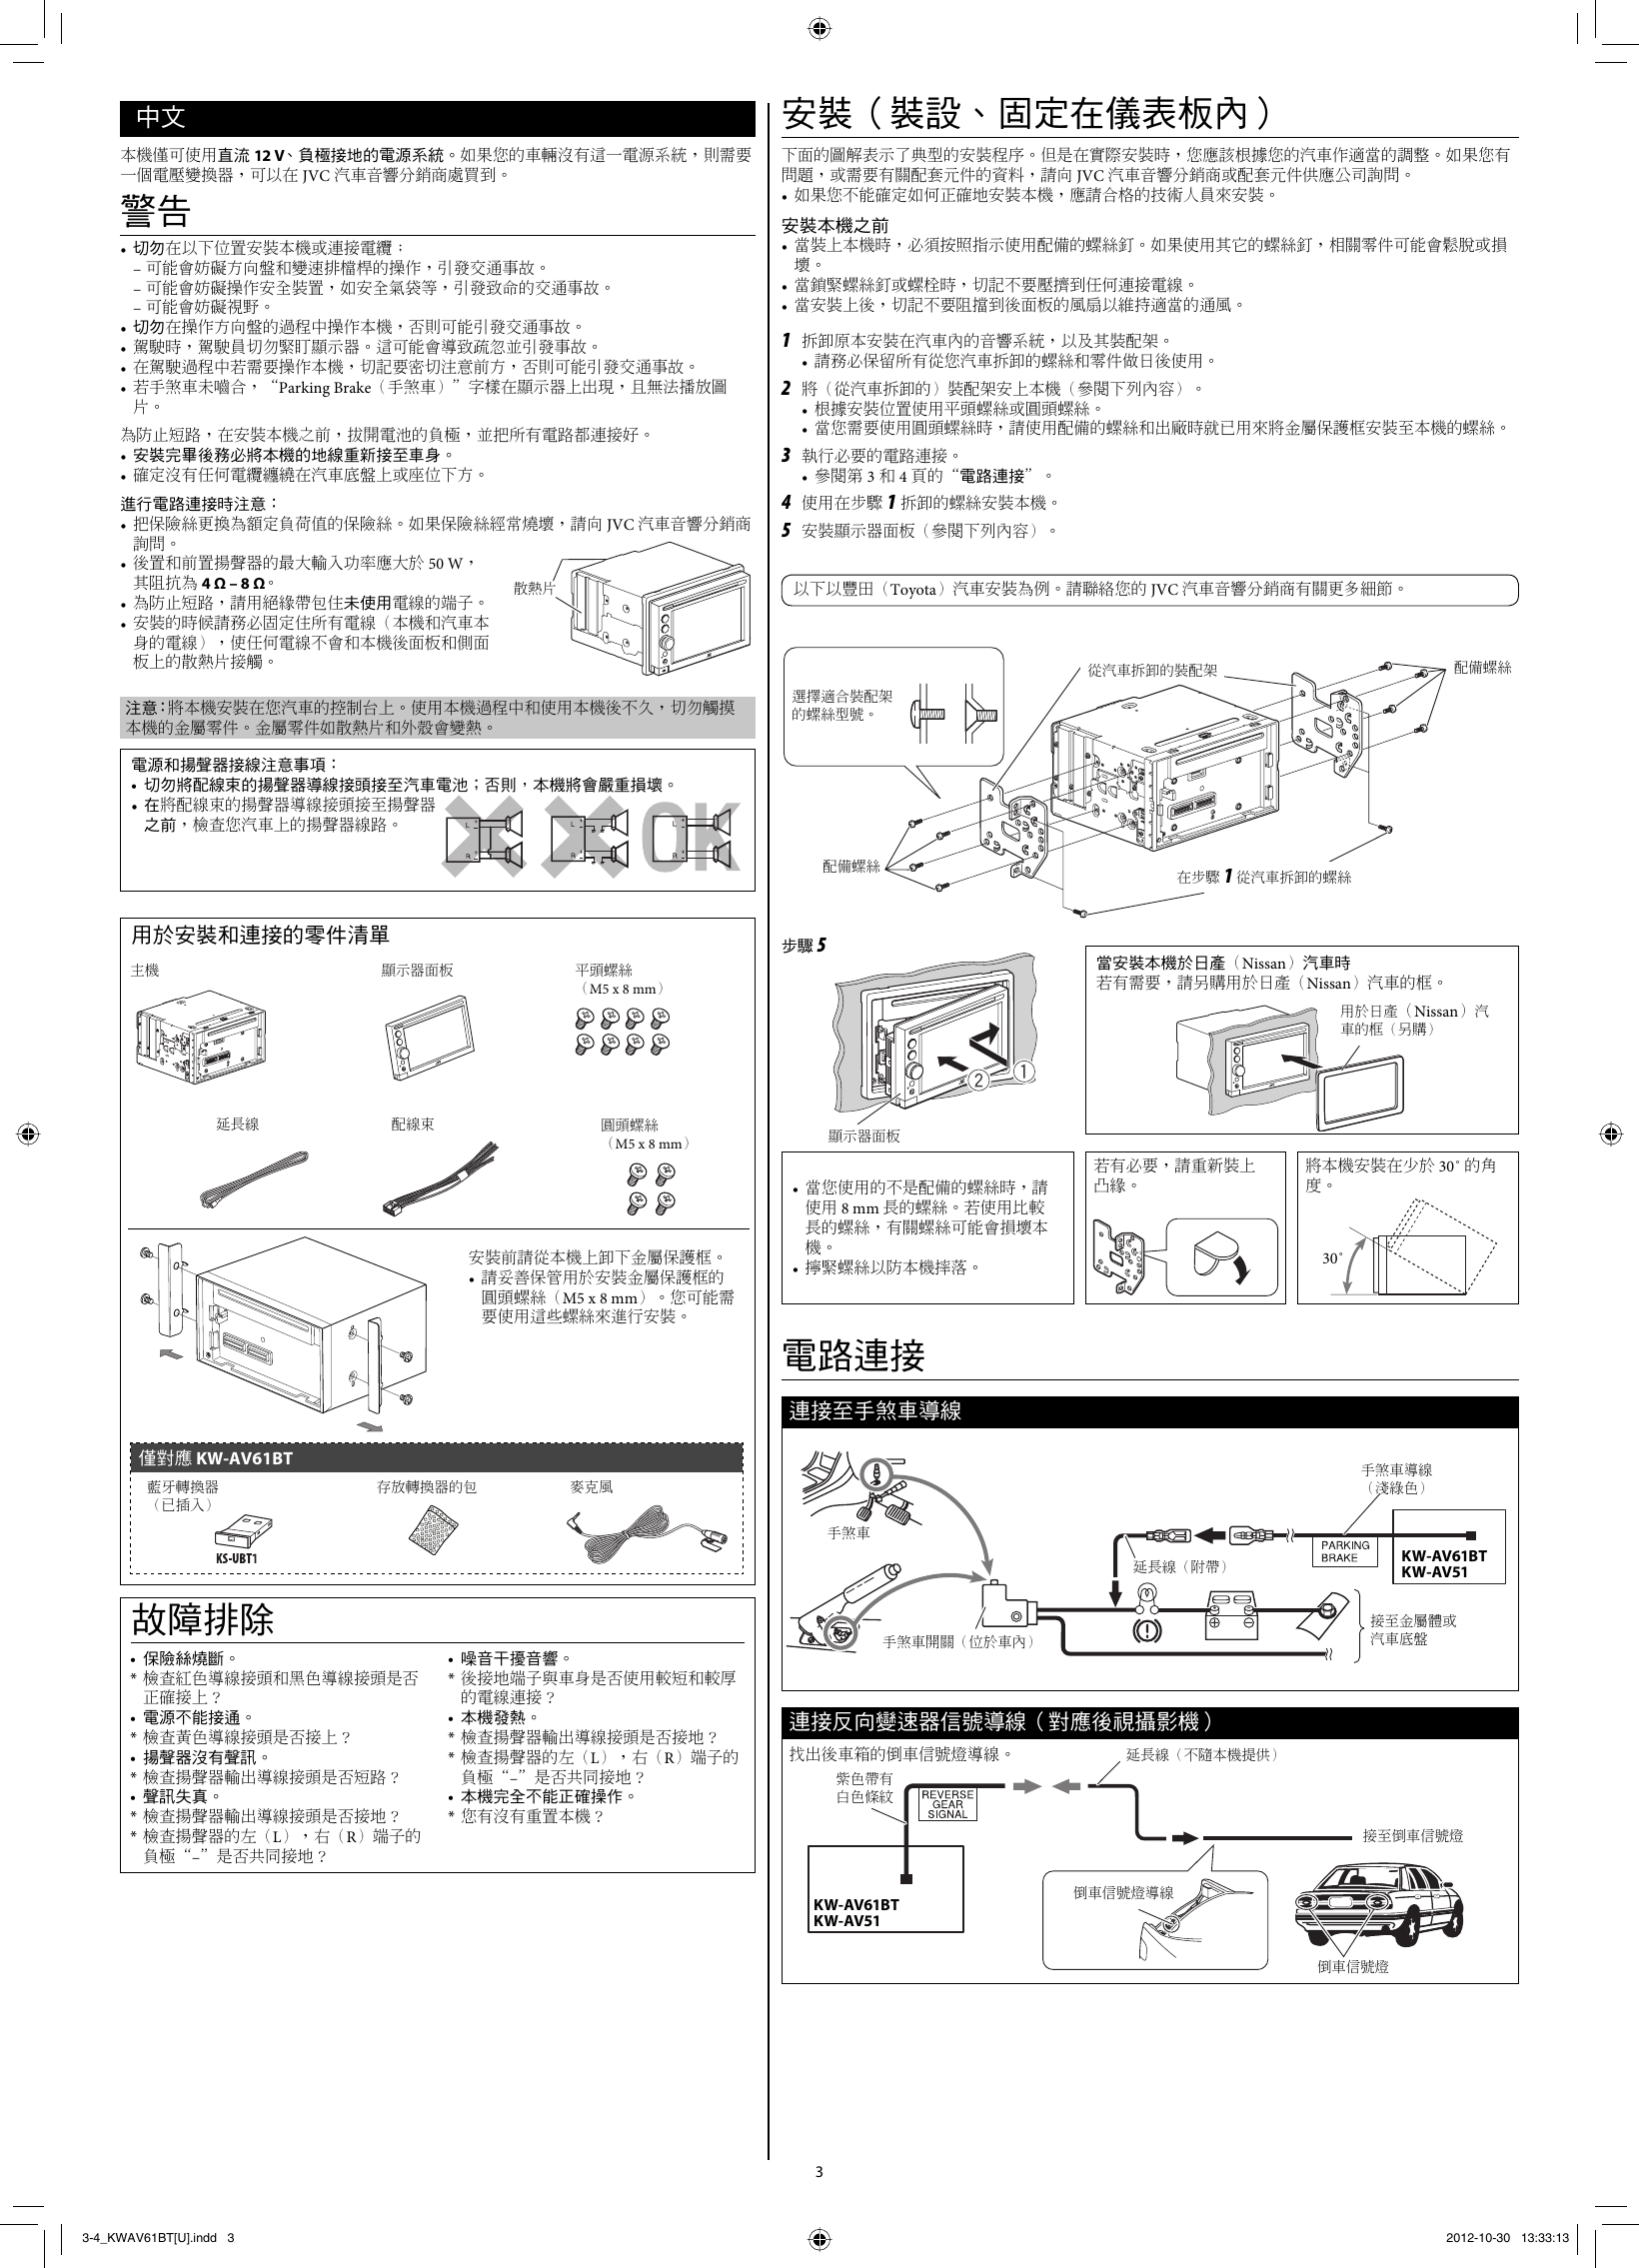 Page 3 of 6 - JVC KW-AV51U KW-AV61BT/KW-AV51[U] User Manual KW-AV51U, KW-AV61BTU GET0888-002A